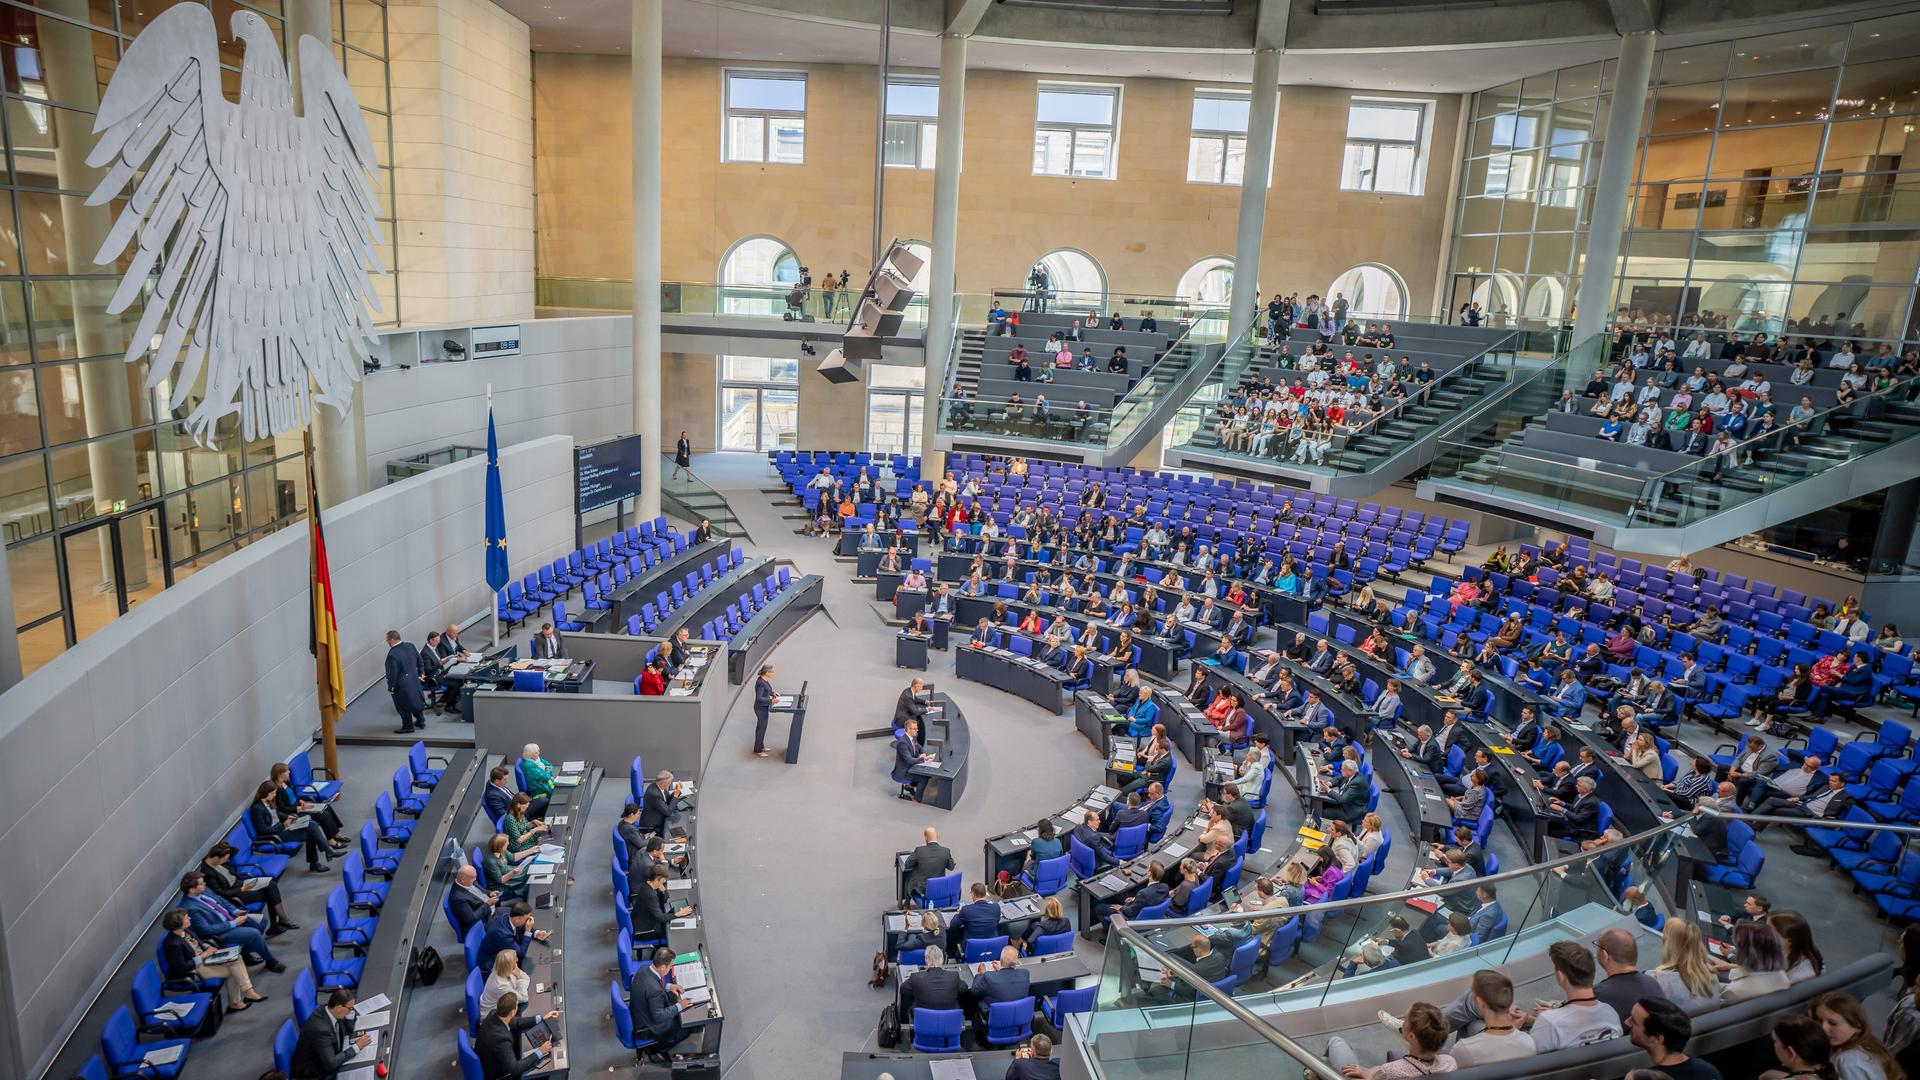 Blick in den Plenarsaal im Bundestages bei der Debatte zur Suizidhilfe. Die Parlamentarier debattieren in der Sitzung über eine mögliche Neuregelung der Sterbehilfe.